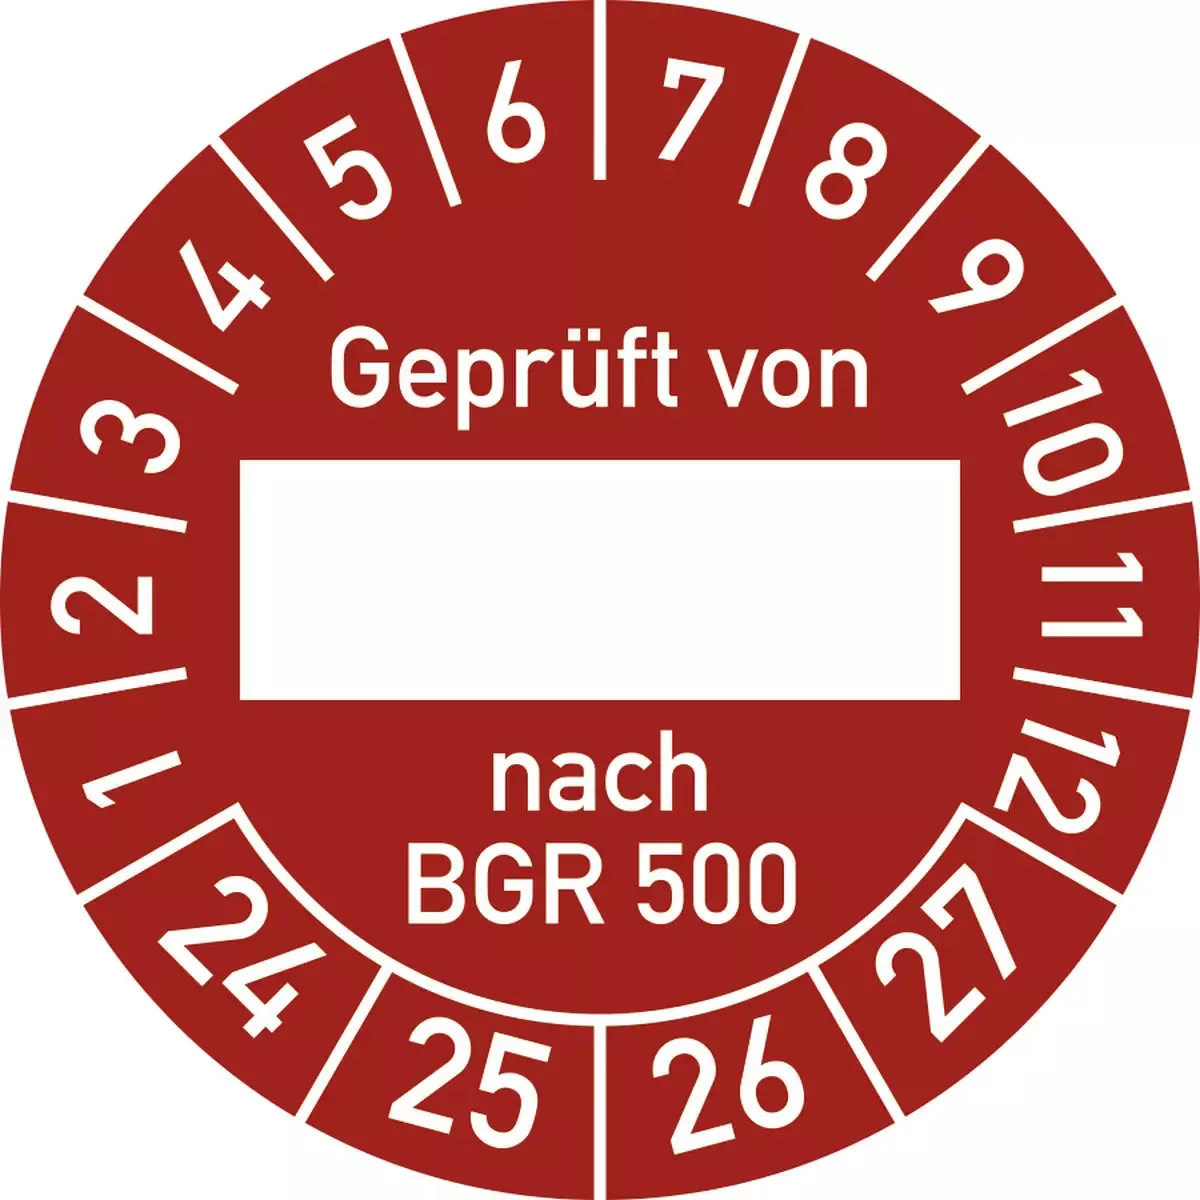 Hinweisschilder Prüfplakette Geprüft von nach BGR 500 2024-2027, Folie, Ø 30 mm, 10 Stück Bogen für Warnen und hinweisen